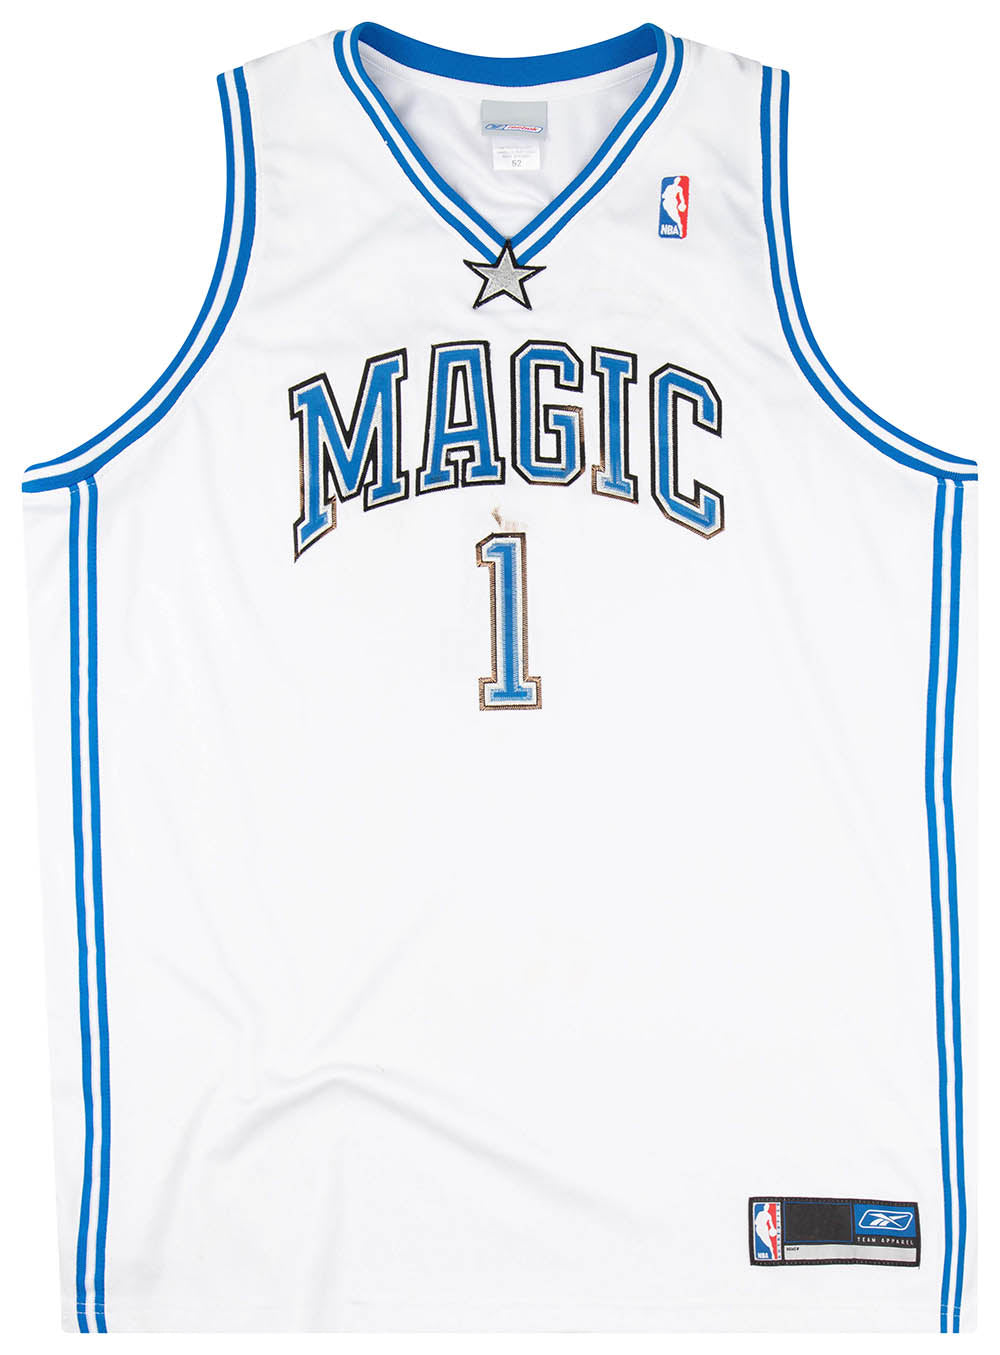 Authentic Nike Tracy McGrady Orlando Magic Swingman Jersey Size XL